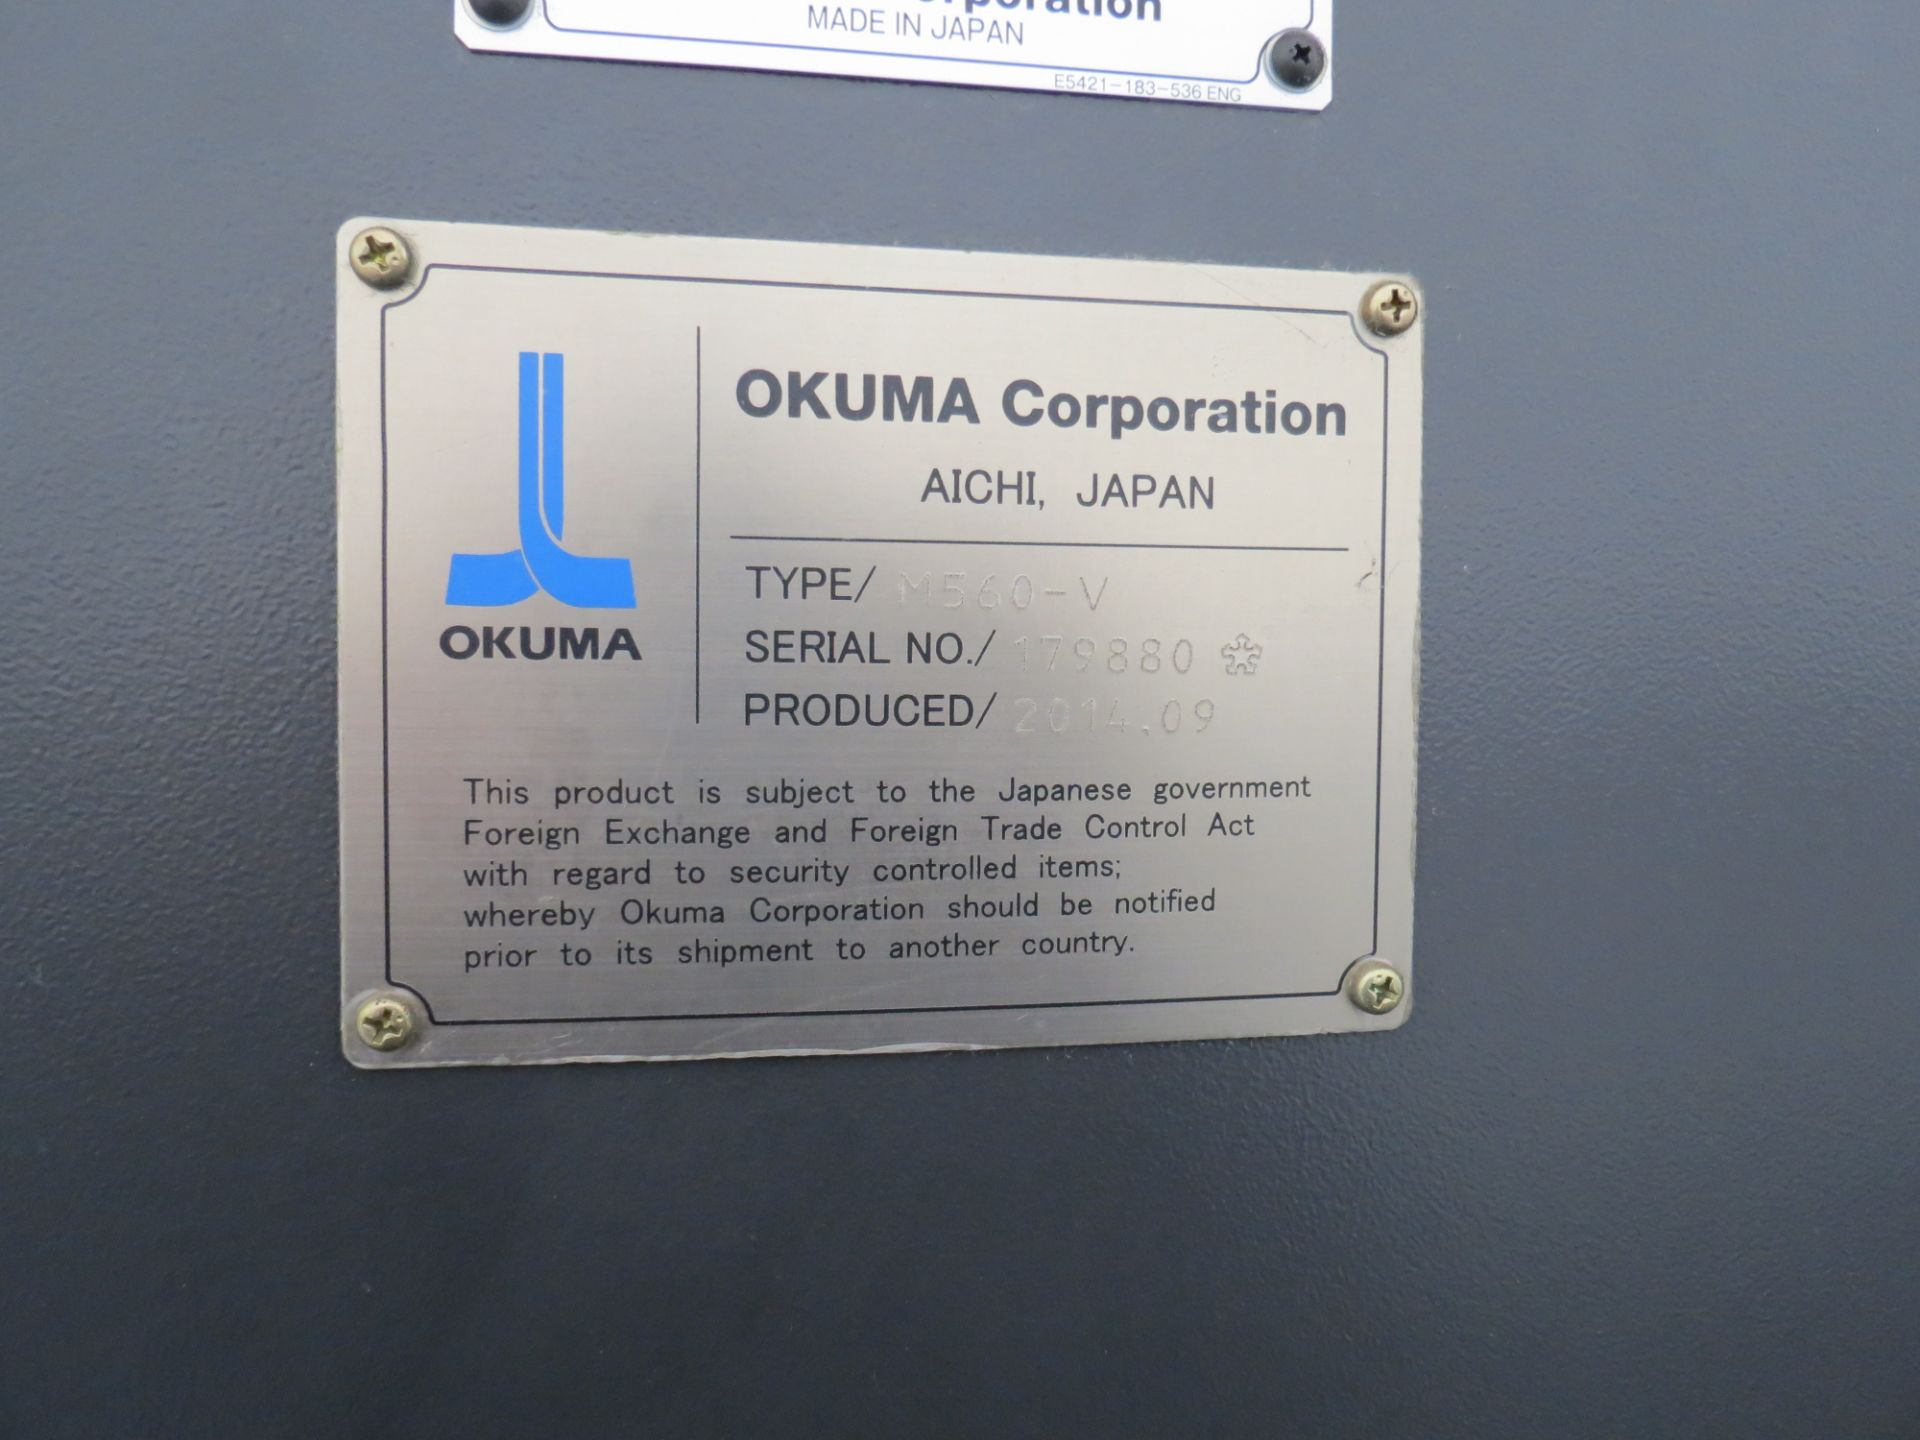 2014 OKUMA GENOS M560-V CNC VERTICAL MACHINING CENTER WITH OKUMA QSP-P300M CONTROL, SN: 179880, - Image 10 of 11